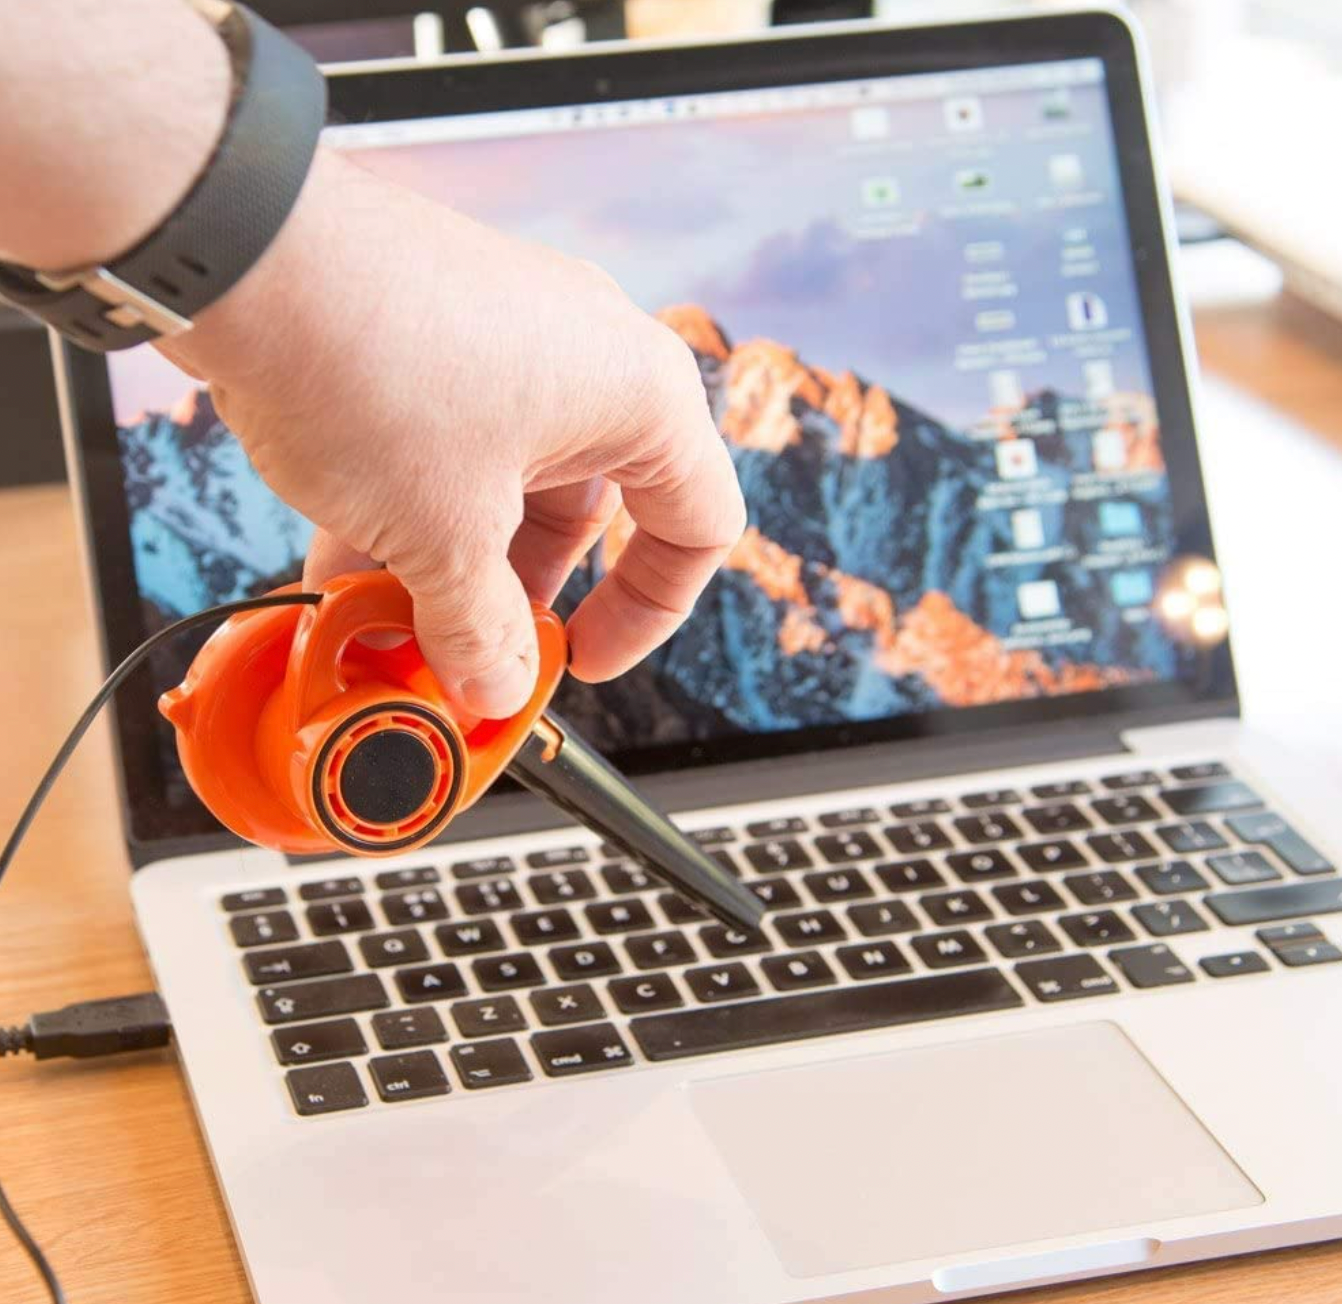 World's Tiniest Blower – USB Power - Orange